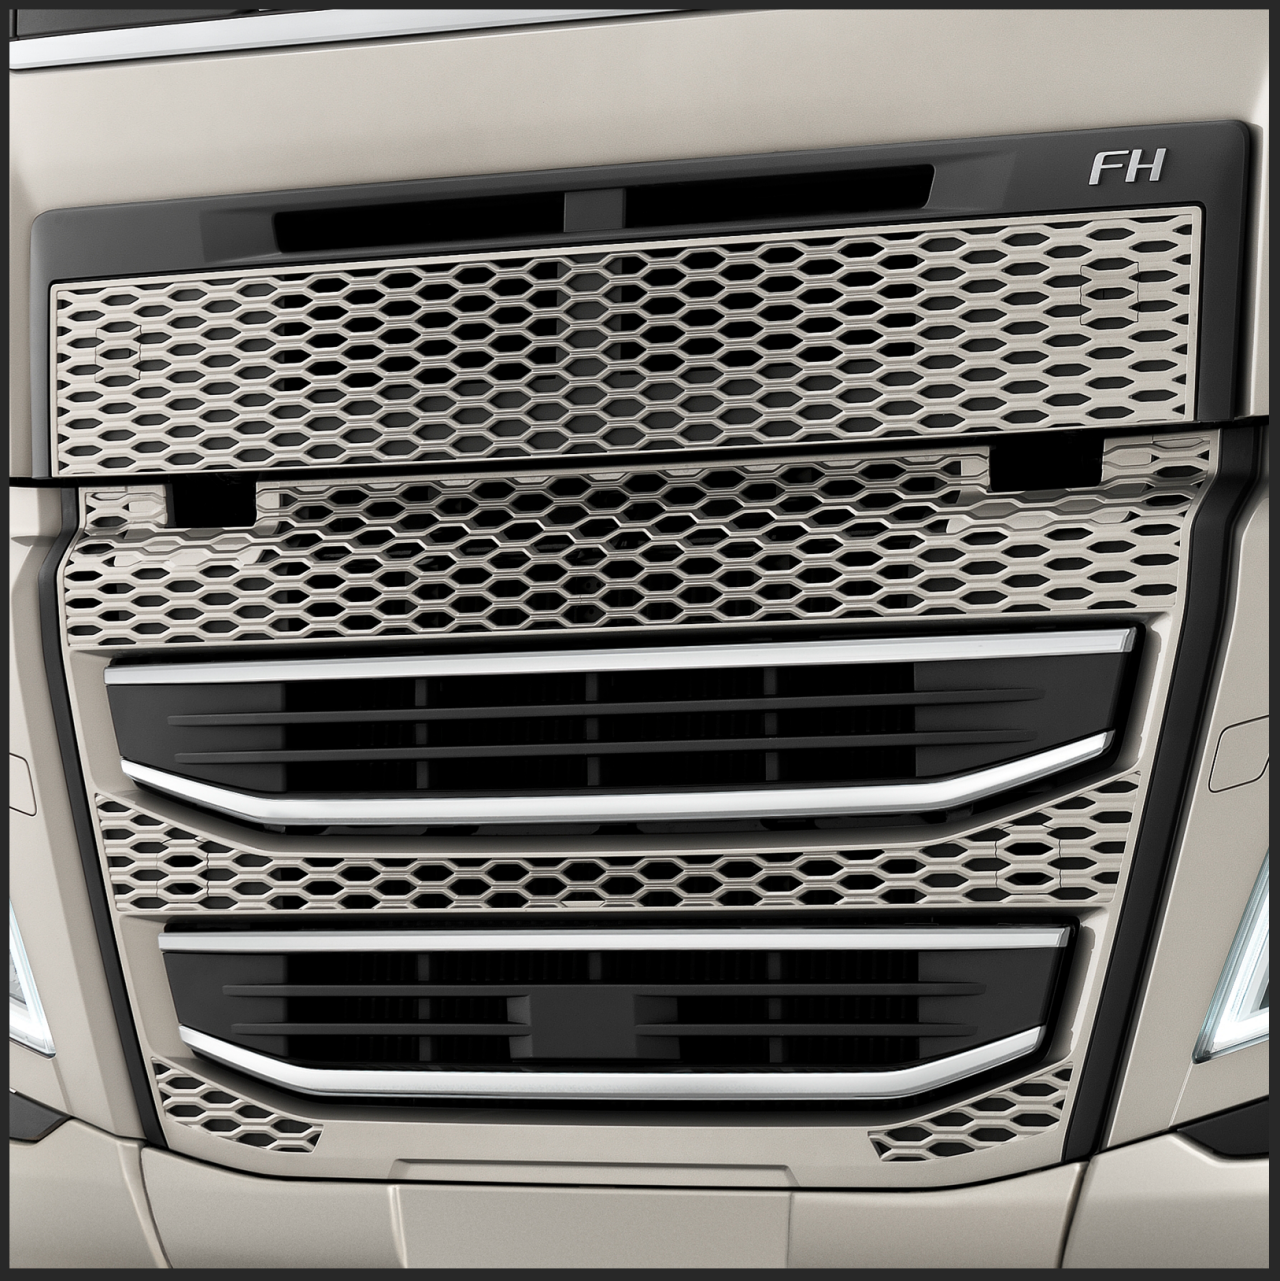 Sistema integrado de protección contra empotramiento frontal de Volvo Trucks